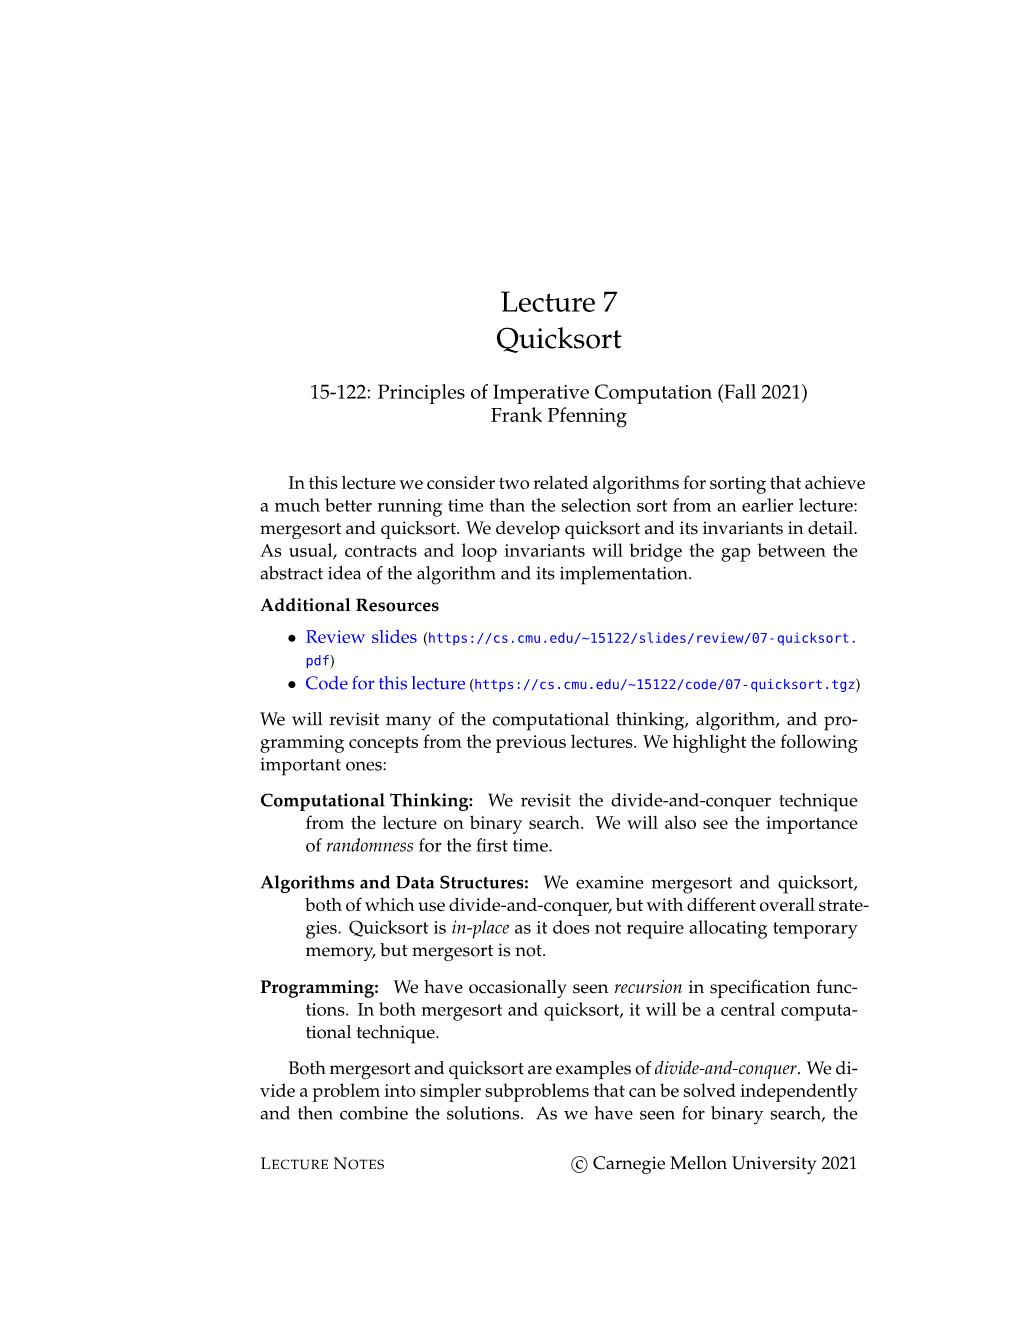 Lecture 7 Quicksort